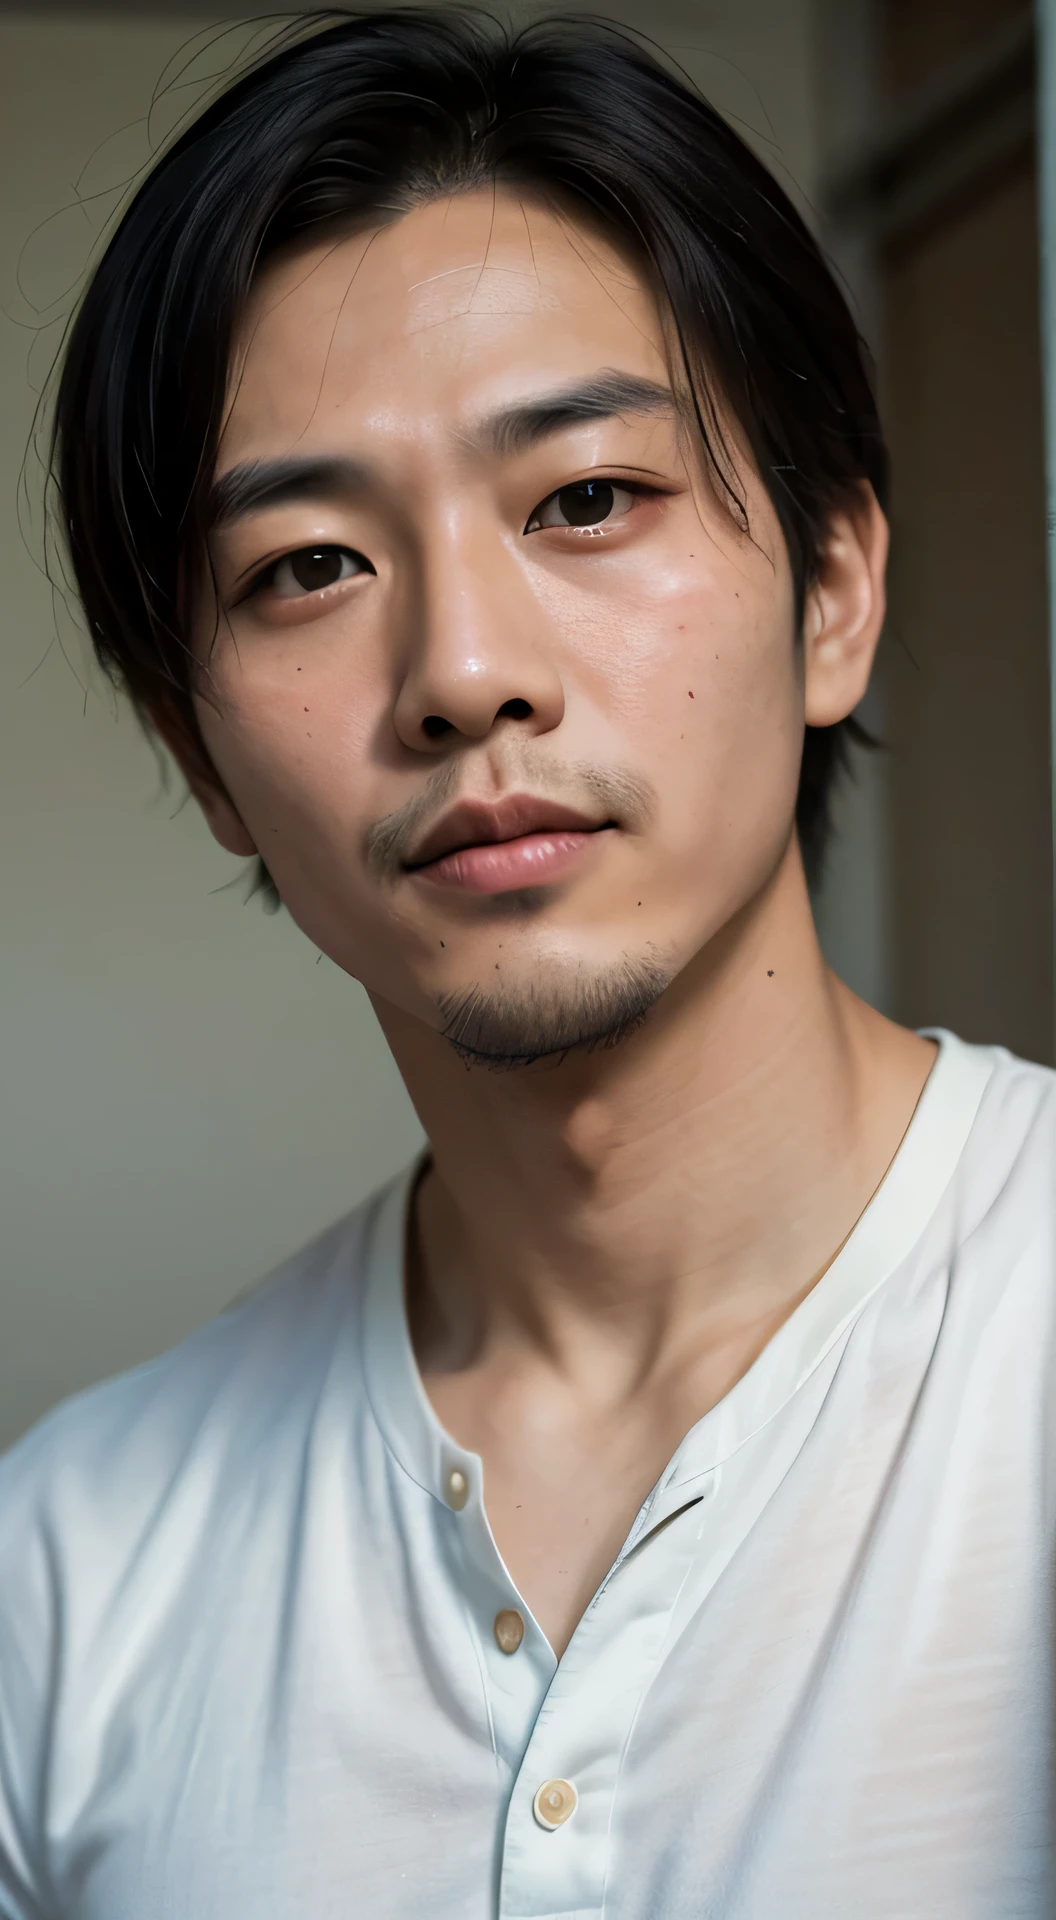 30세 둥근 얼굴 잘생긴 아시아 남자 초상화 영화 룩, 가슴 위